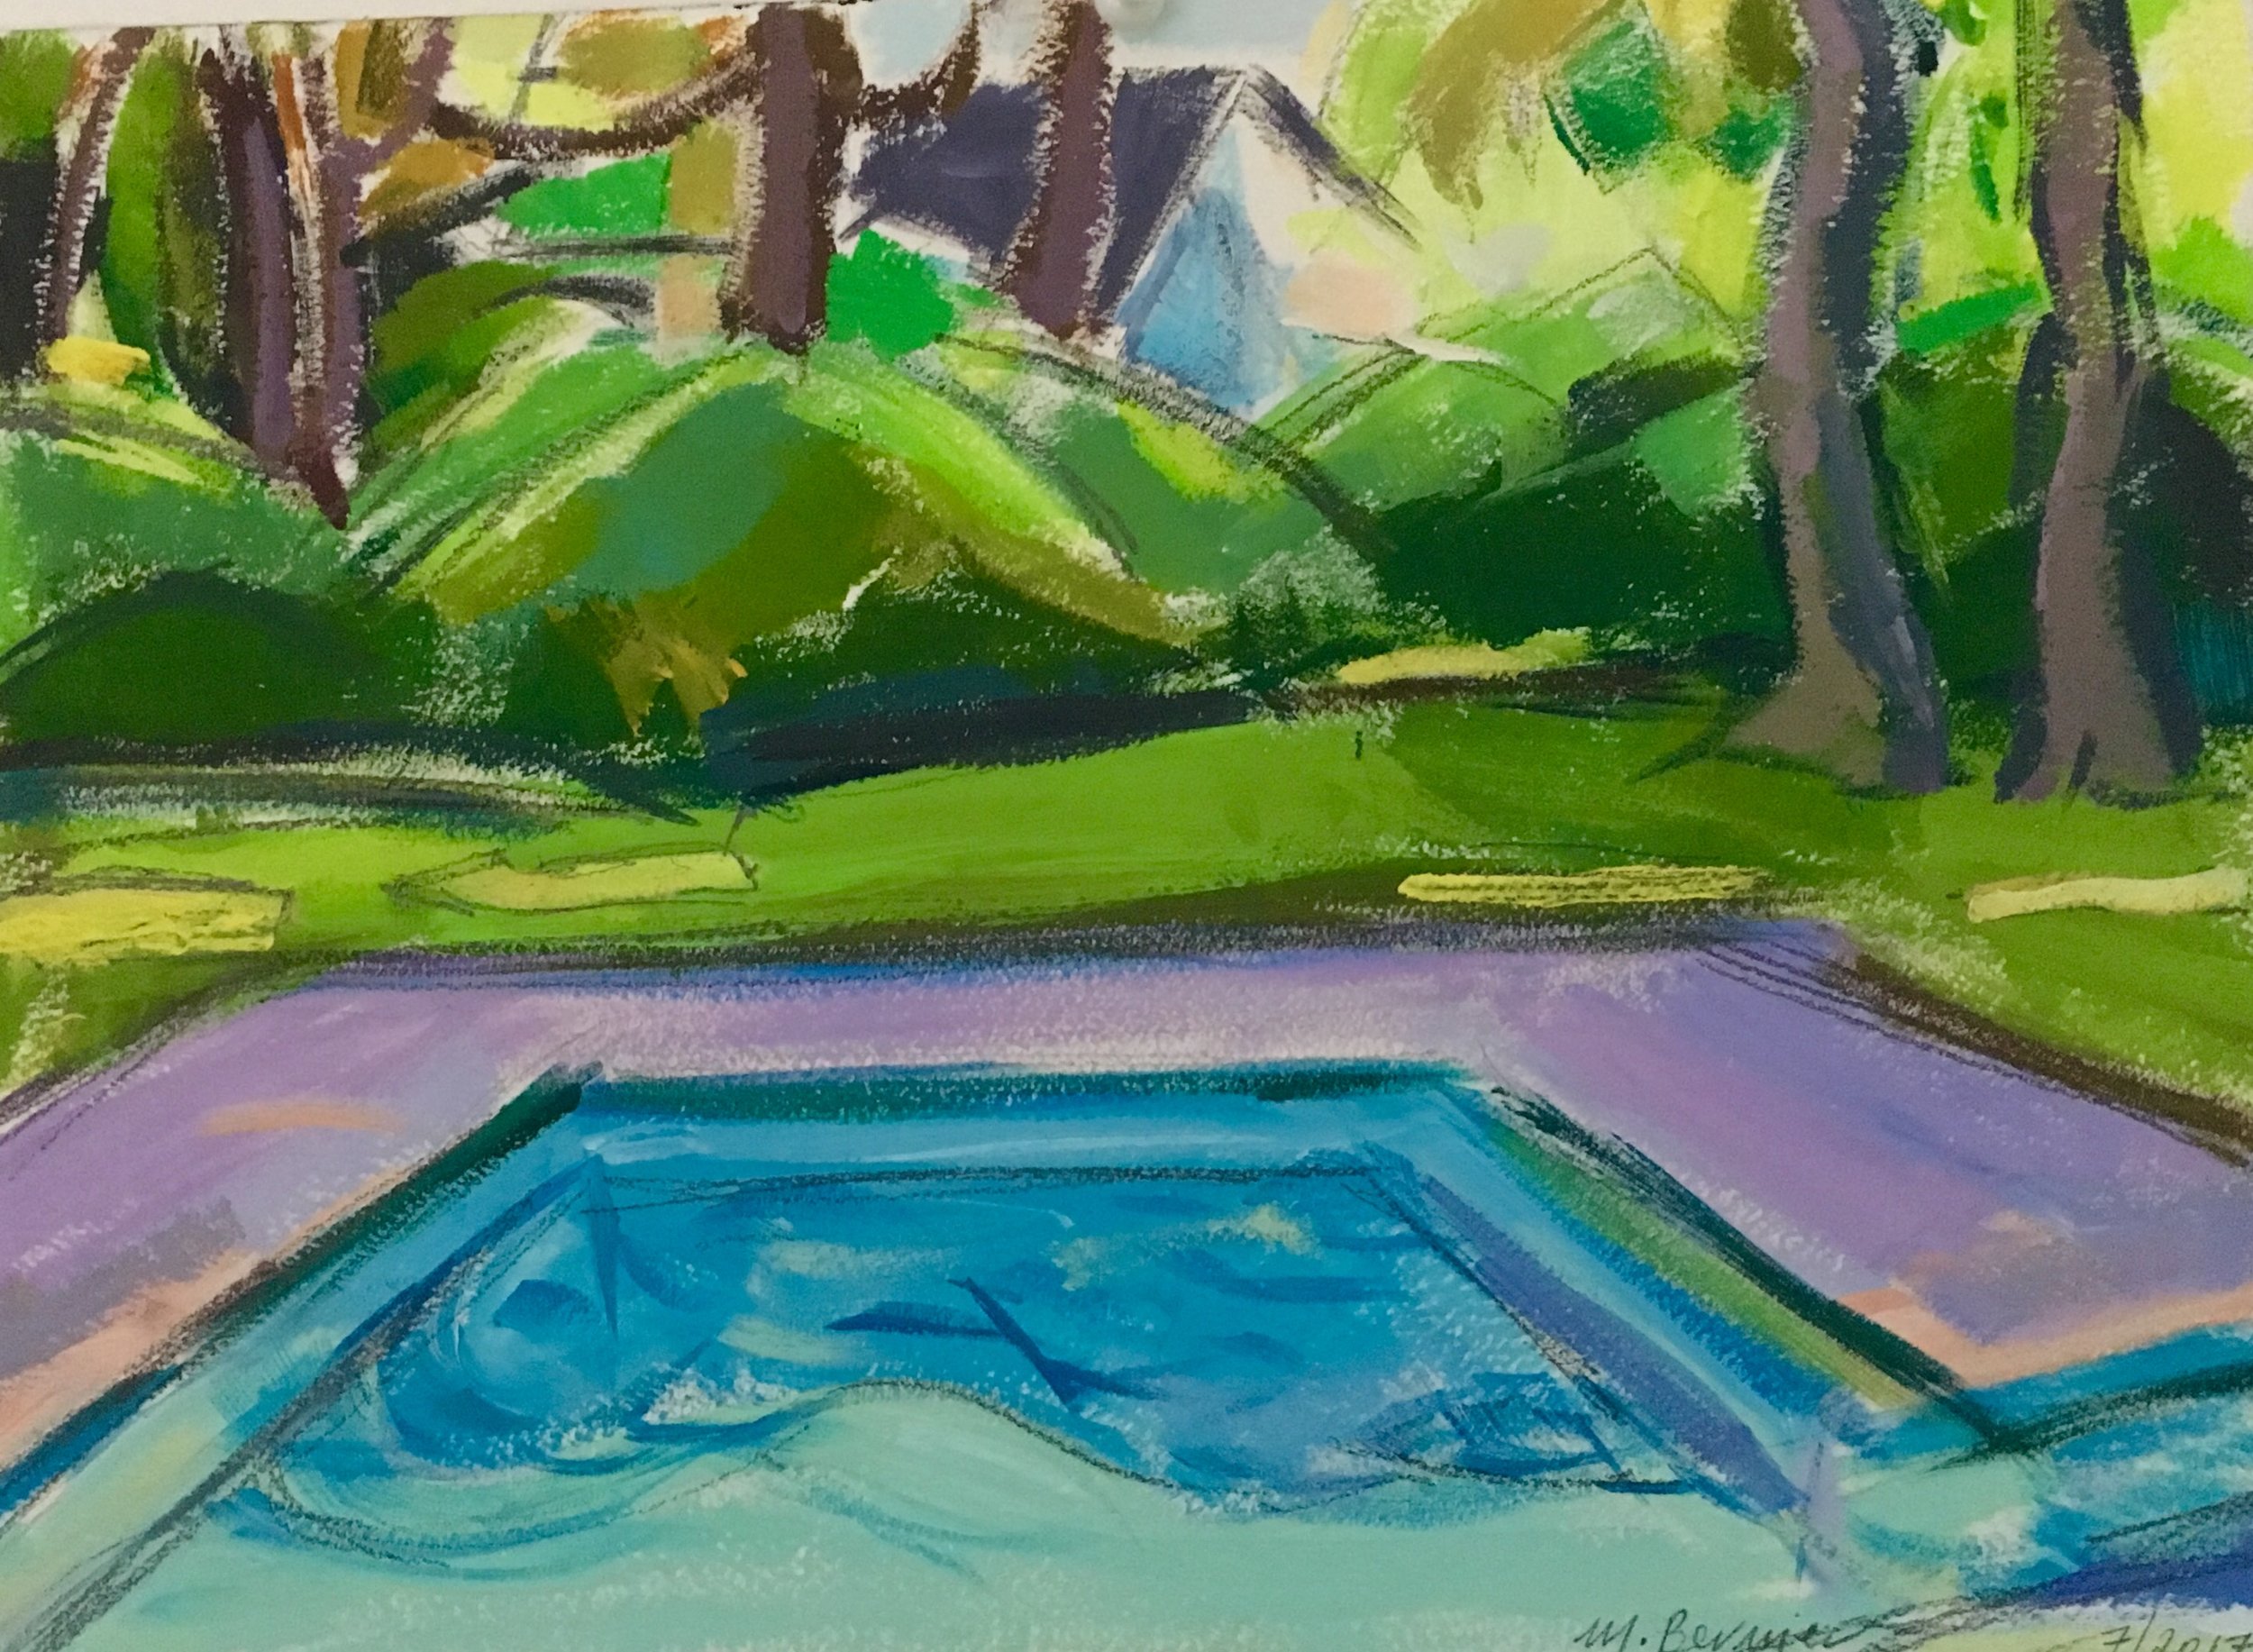    Pool Study I,   gouache, 9 x 12 in., 2017   